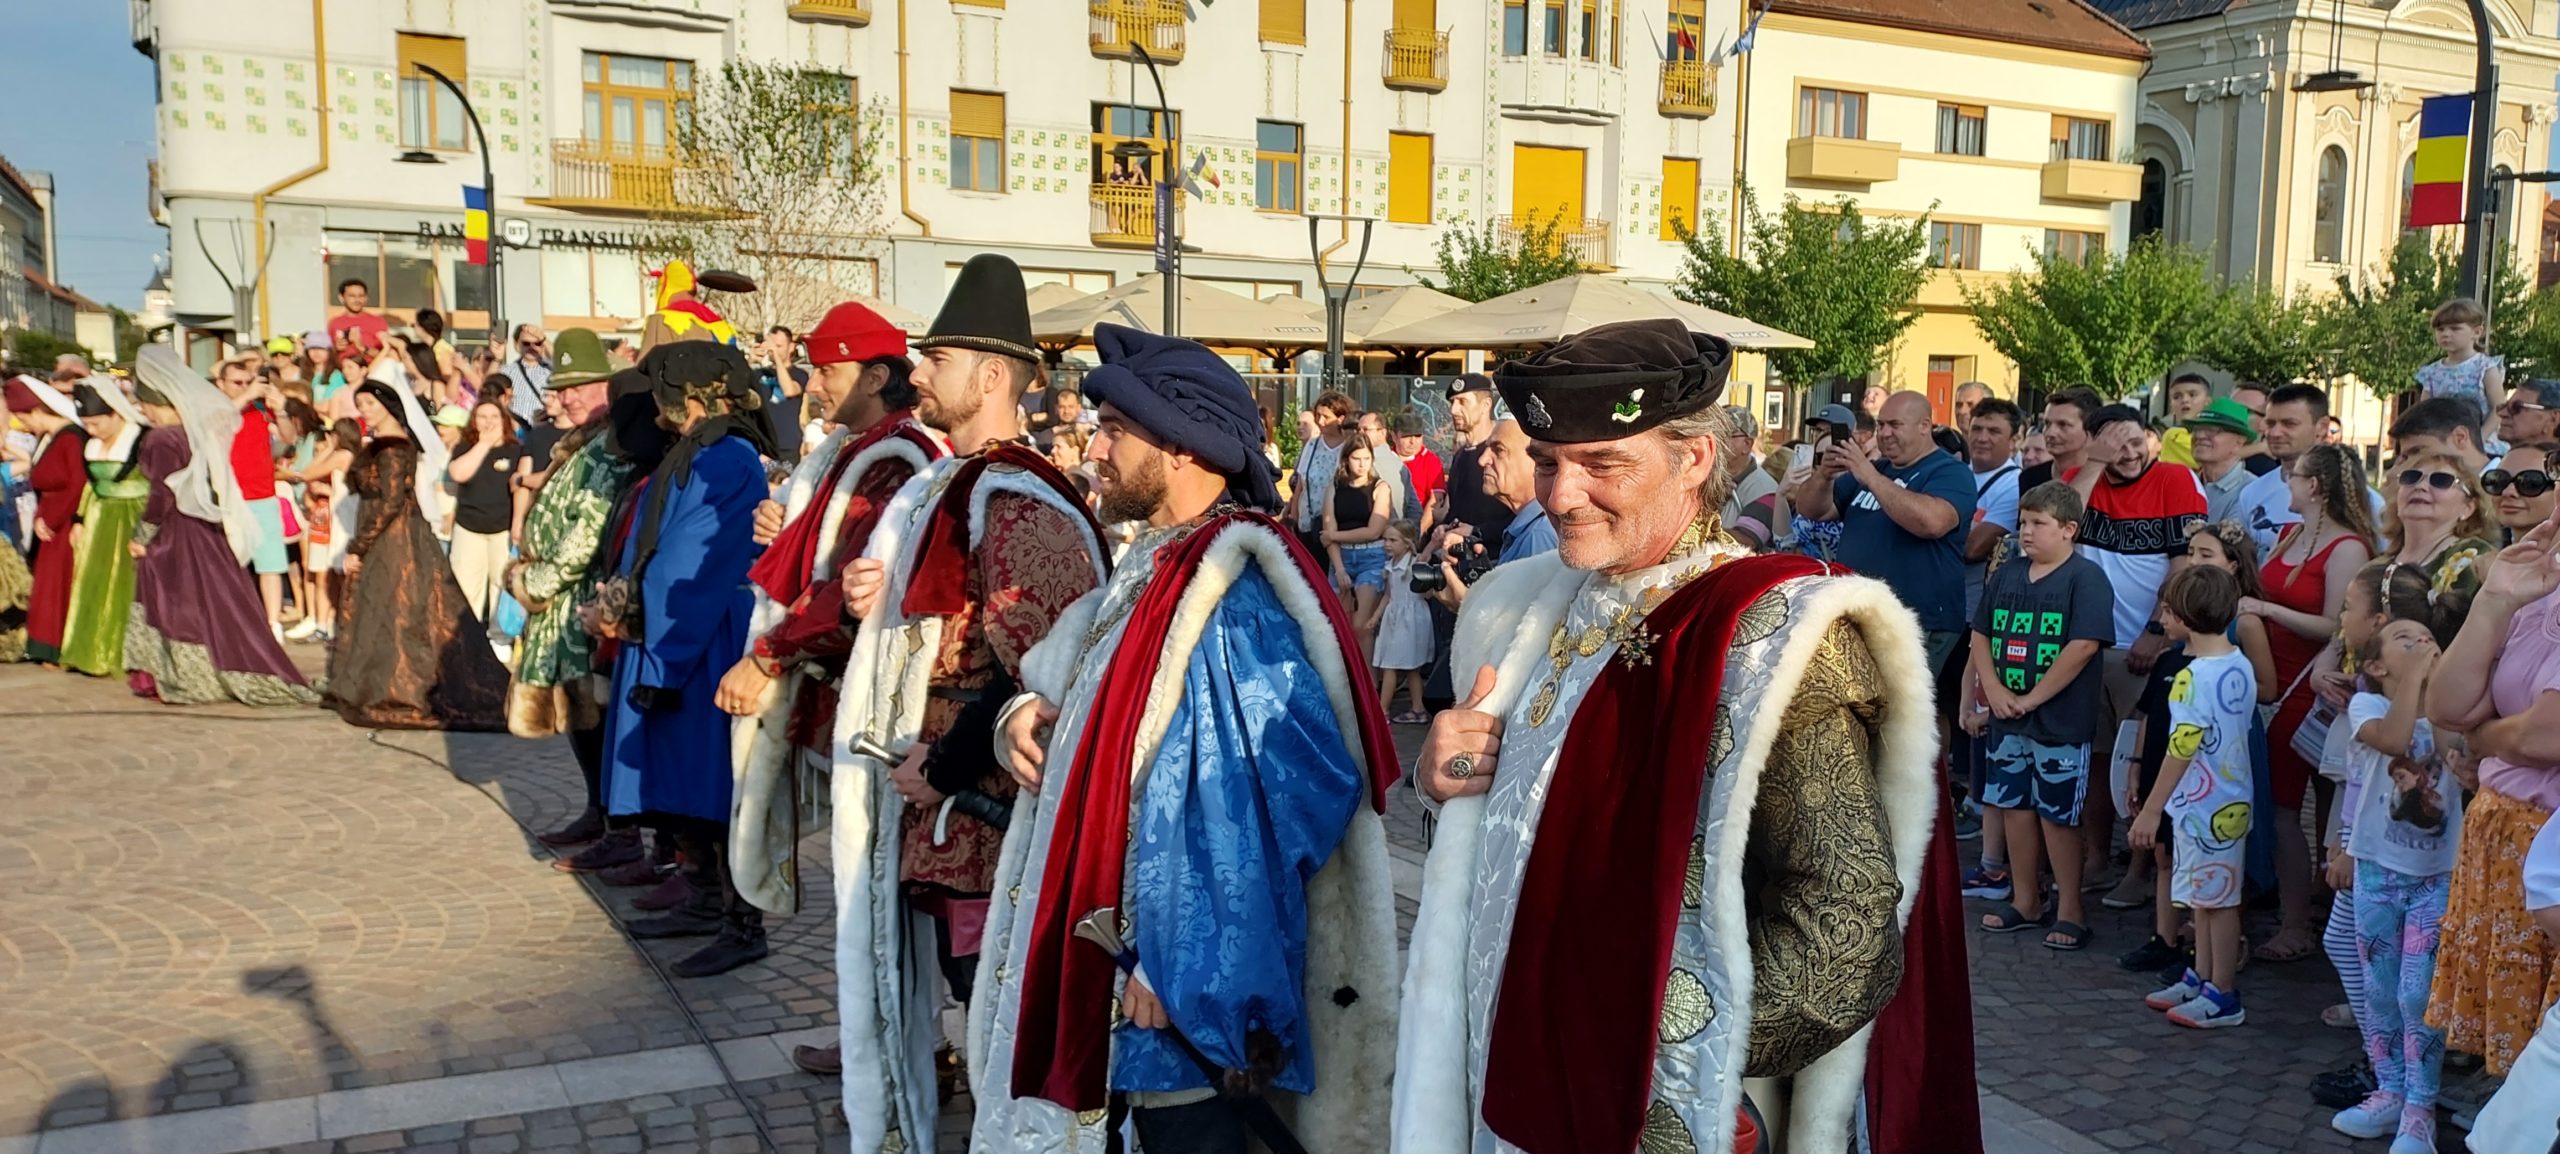 festivalul medieval oradea (14)